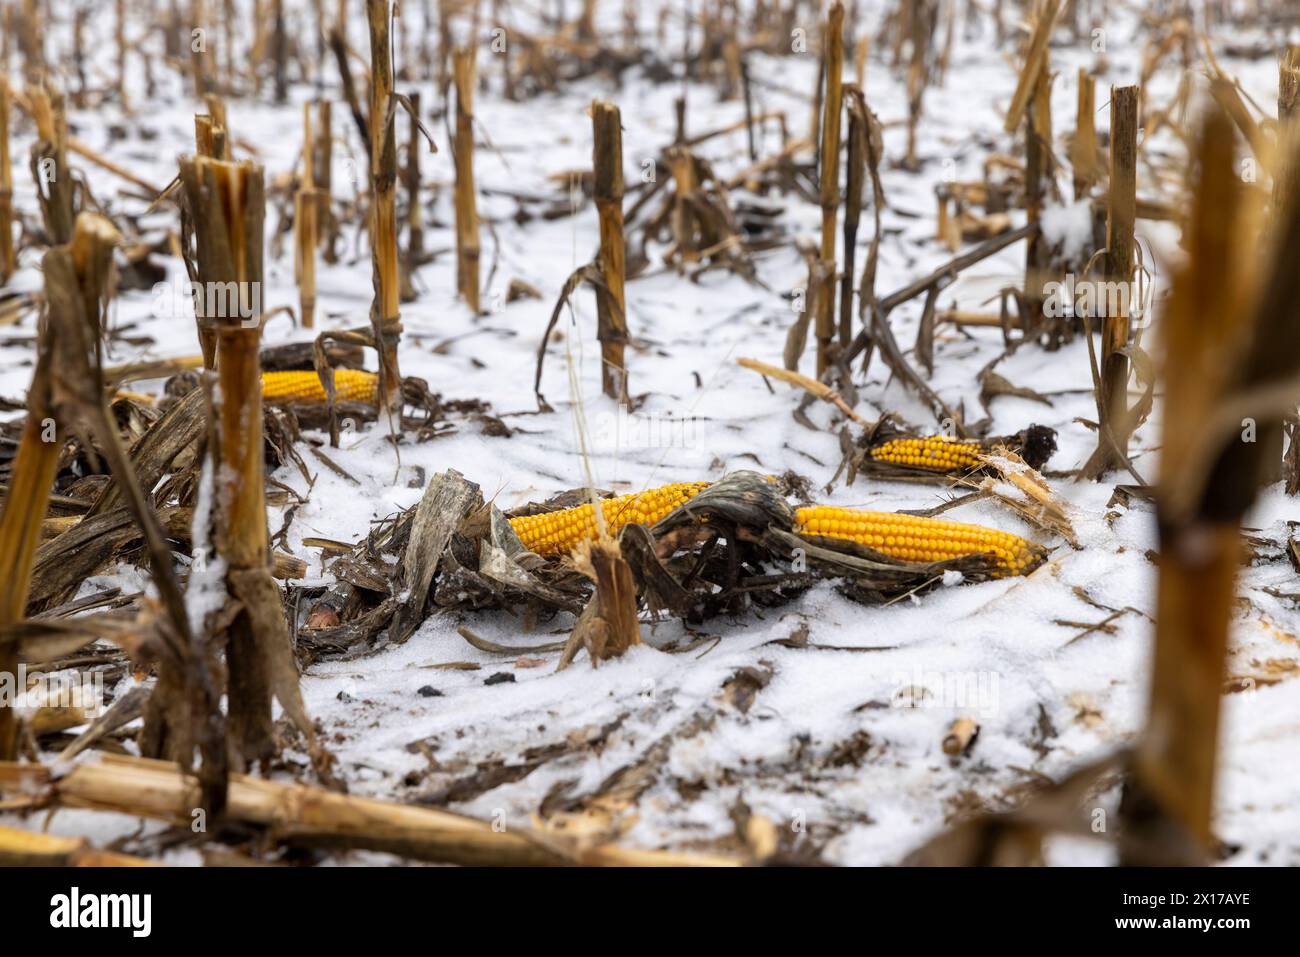 Un champ de maïs enneigé en hiver, le maïs se trouve dans la neige après la récolte et les chutes de neige Banque D'Images